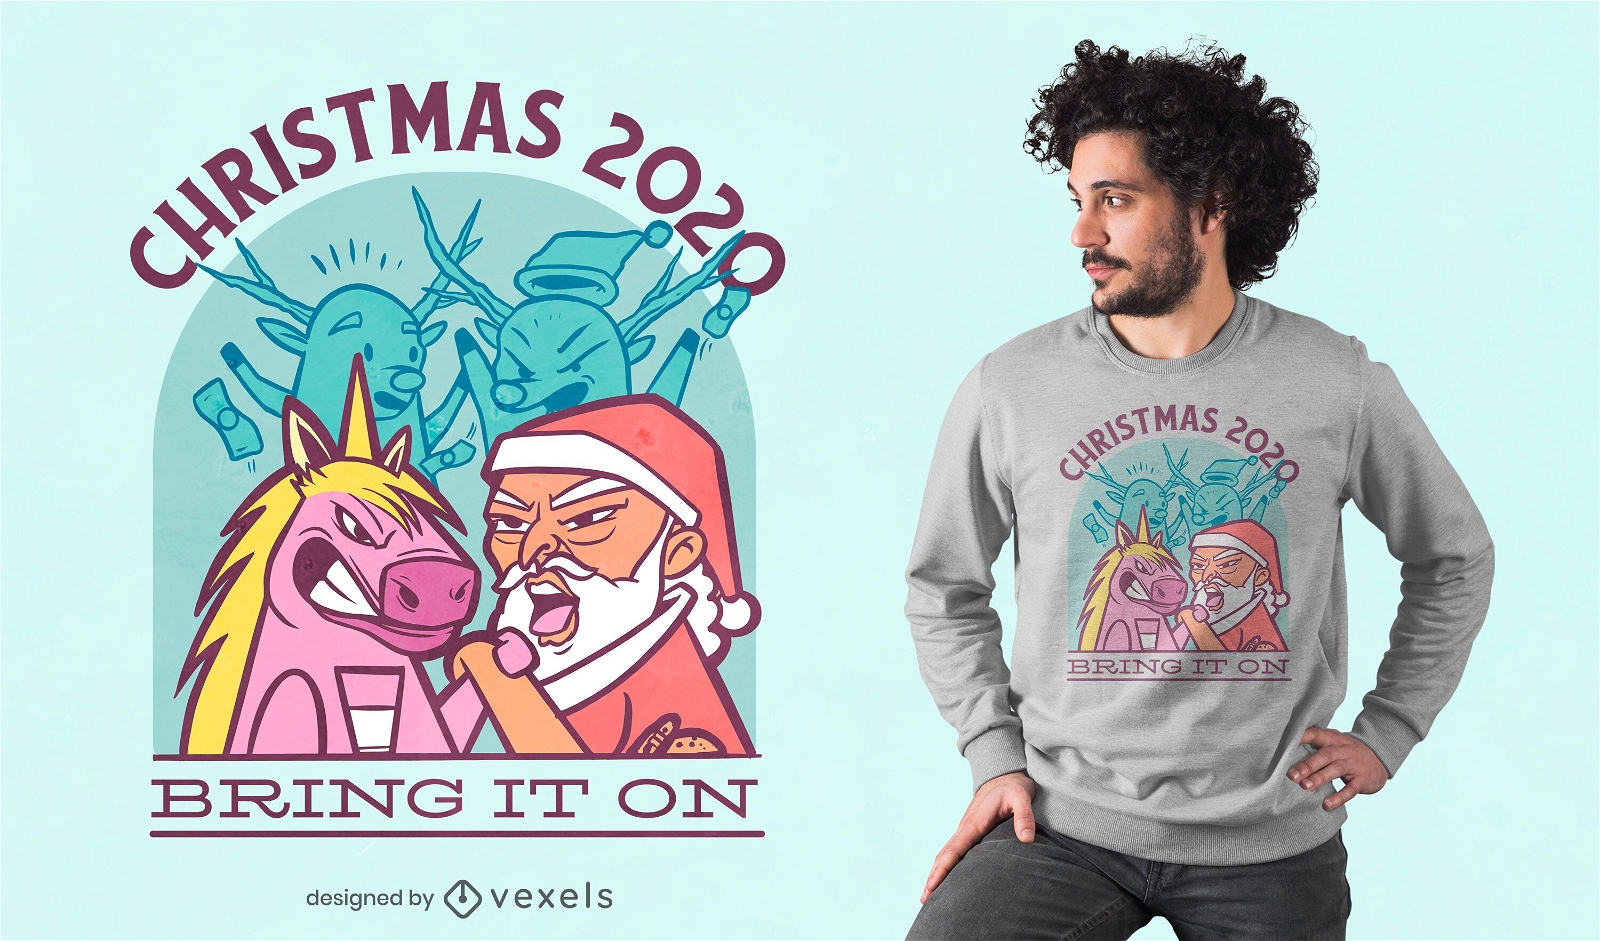 Unicorn vs Santa t-shirt design